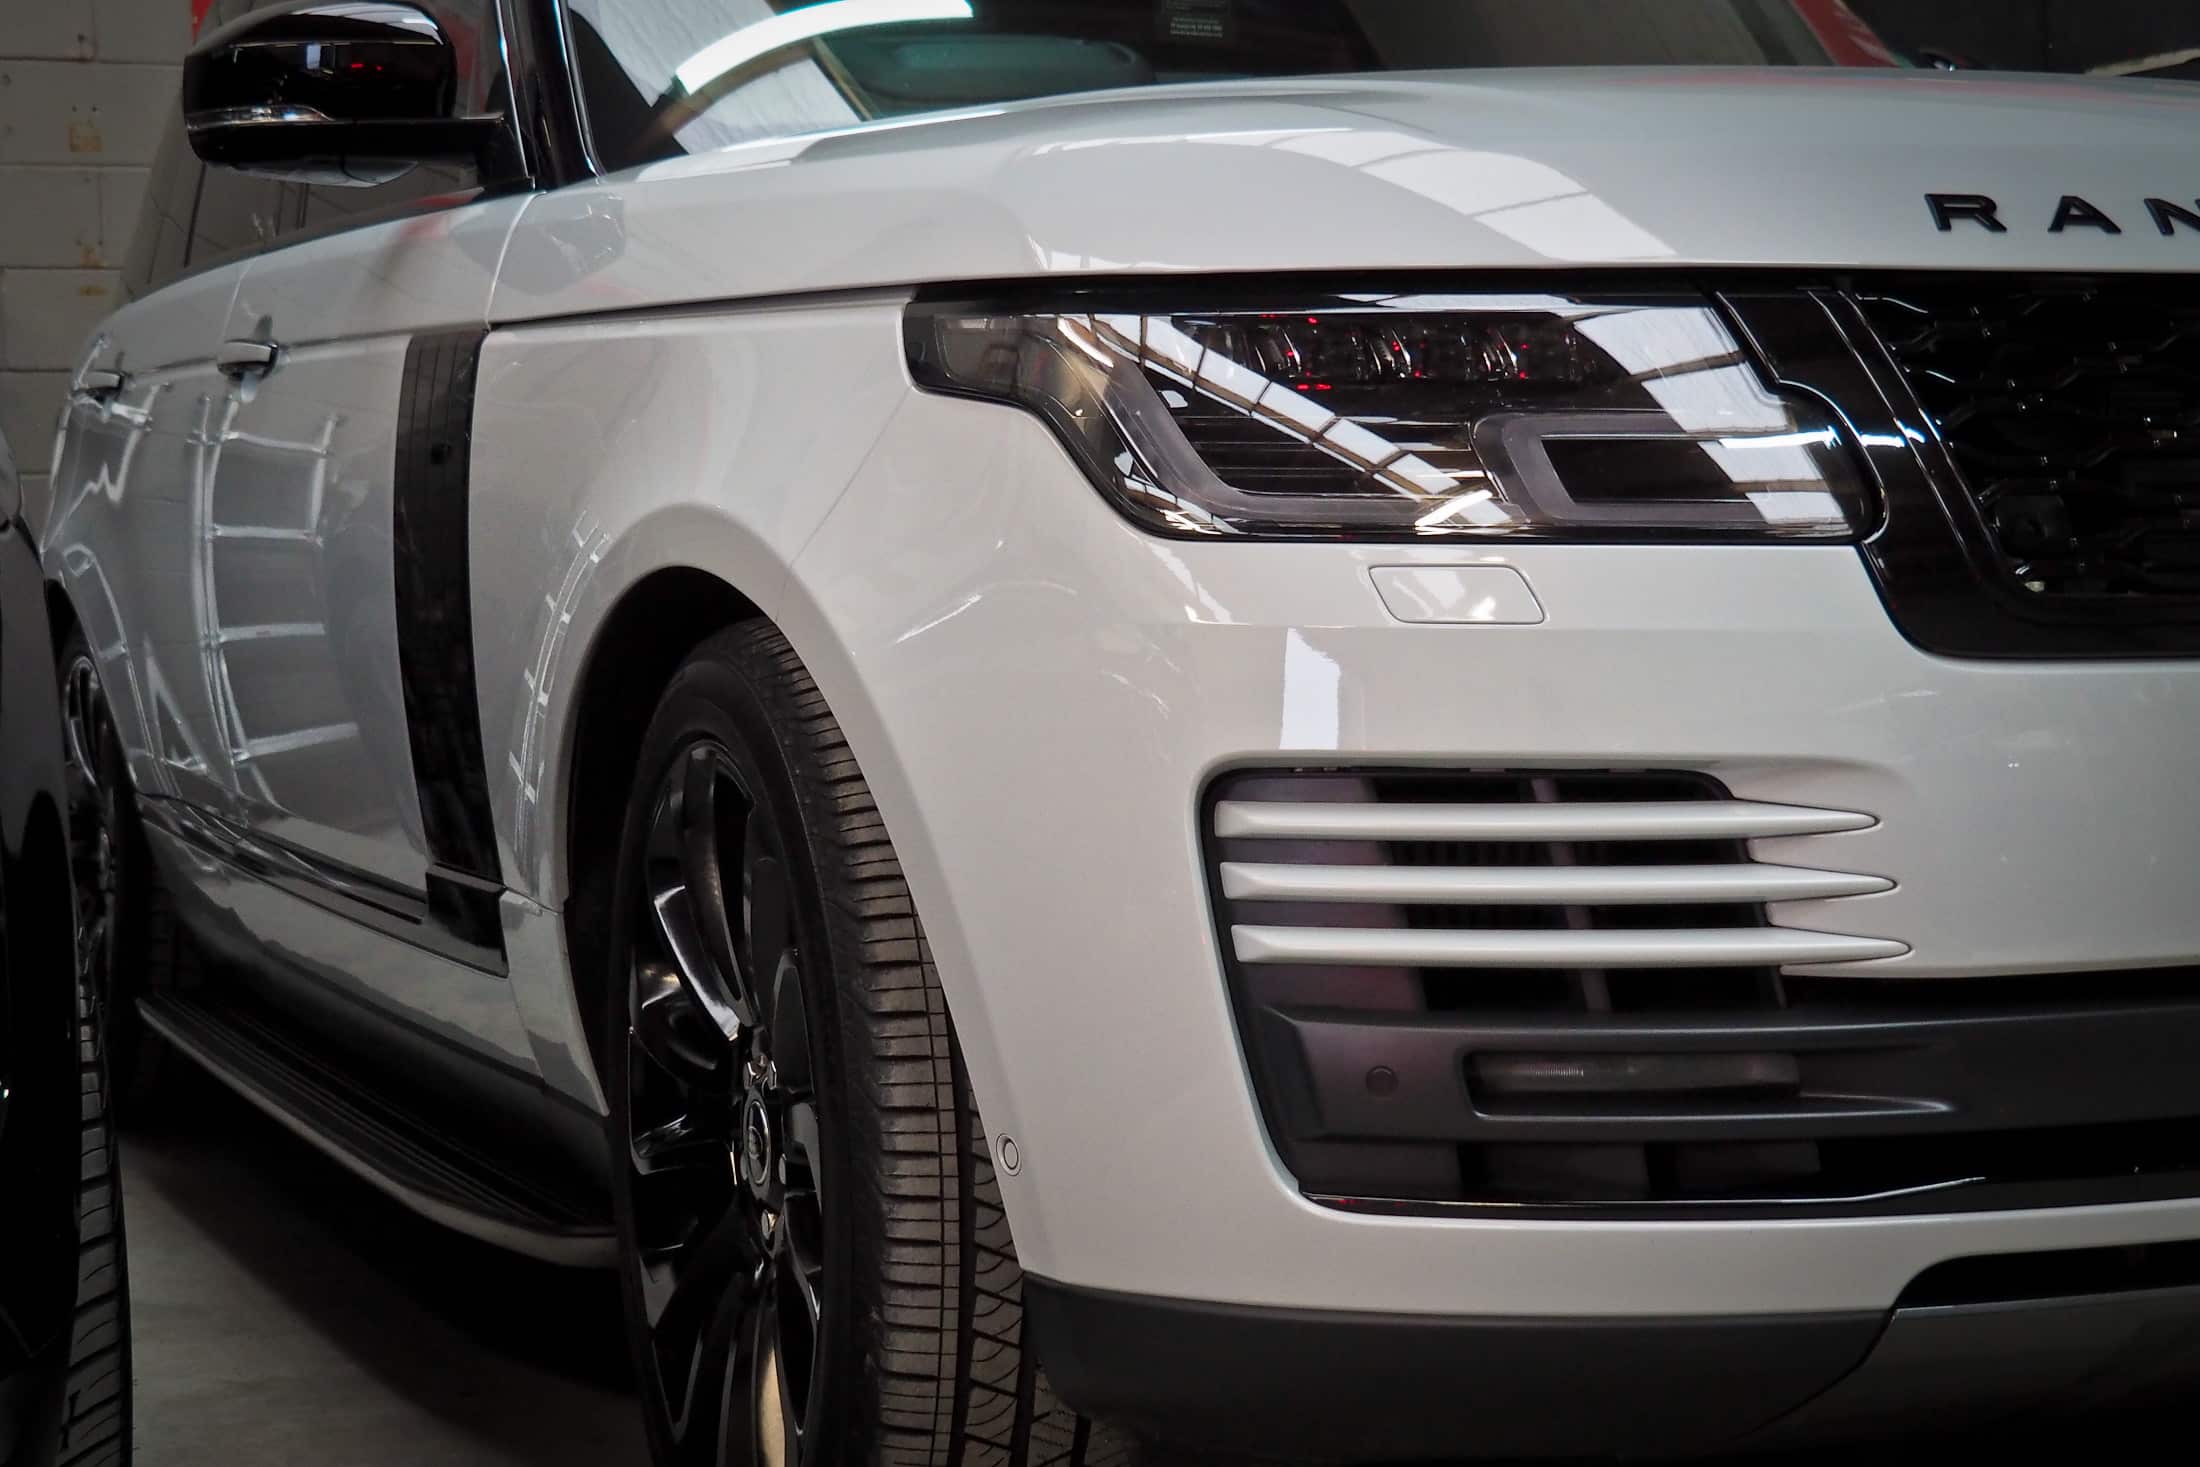 Land Rover Detailing Car Barcelona Coche Precio Cerca de mí domicilio tarifas detallado coating tratamiento cerámico pulir pulido carrocería